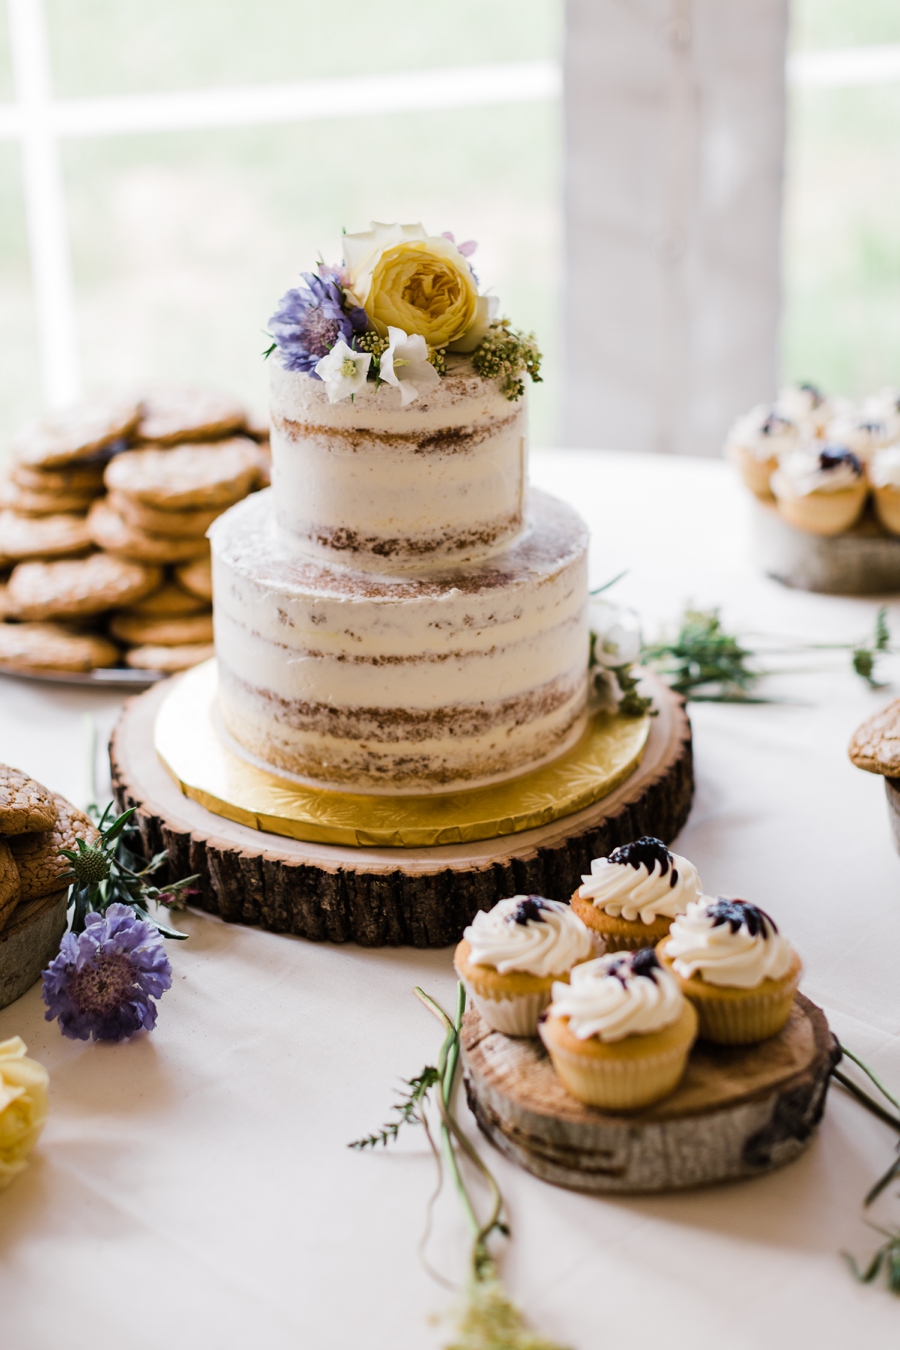 Naked layered wedding cake by Jackson Hole Cake Co